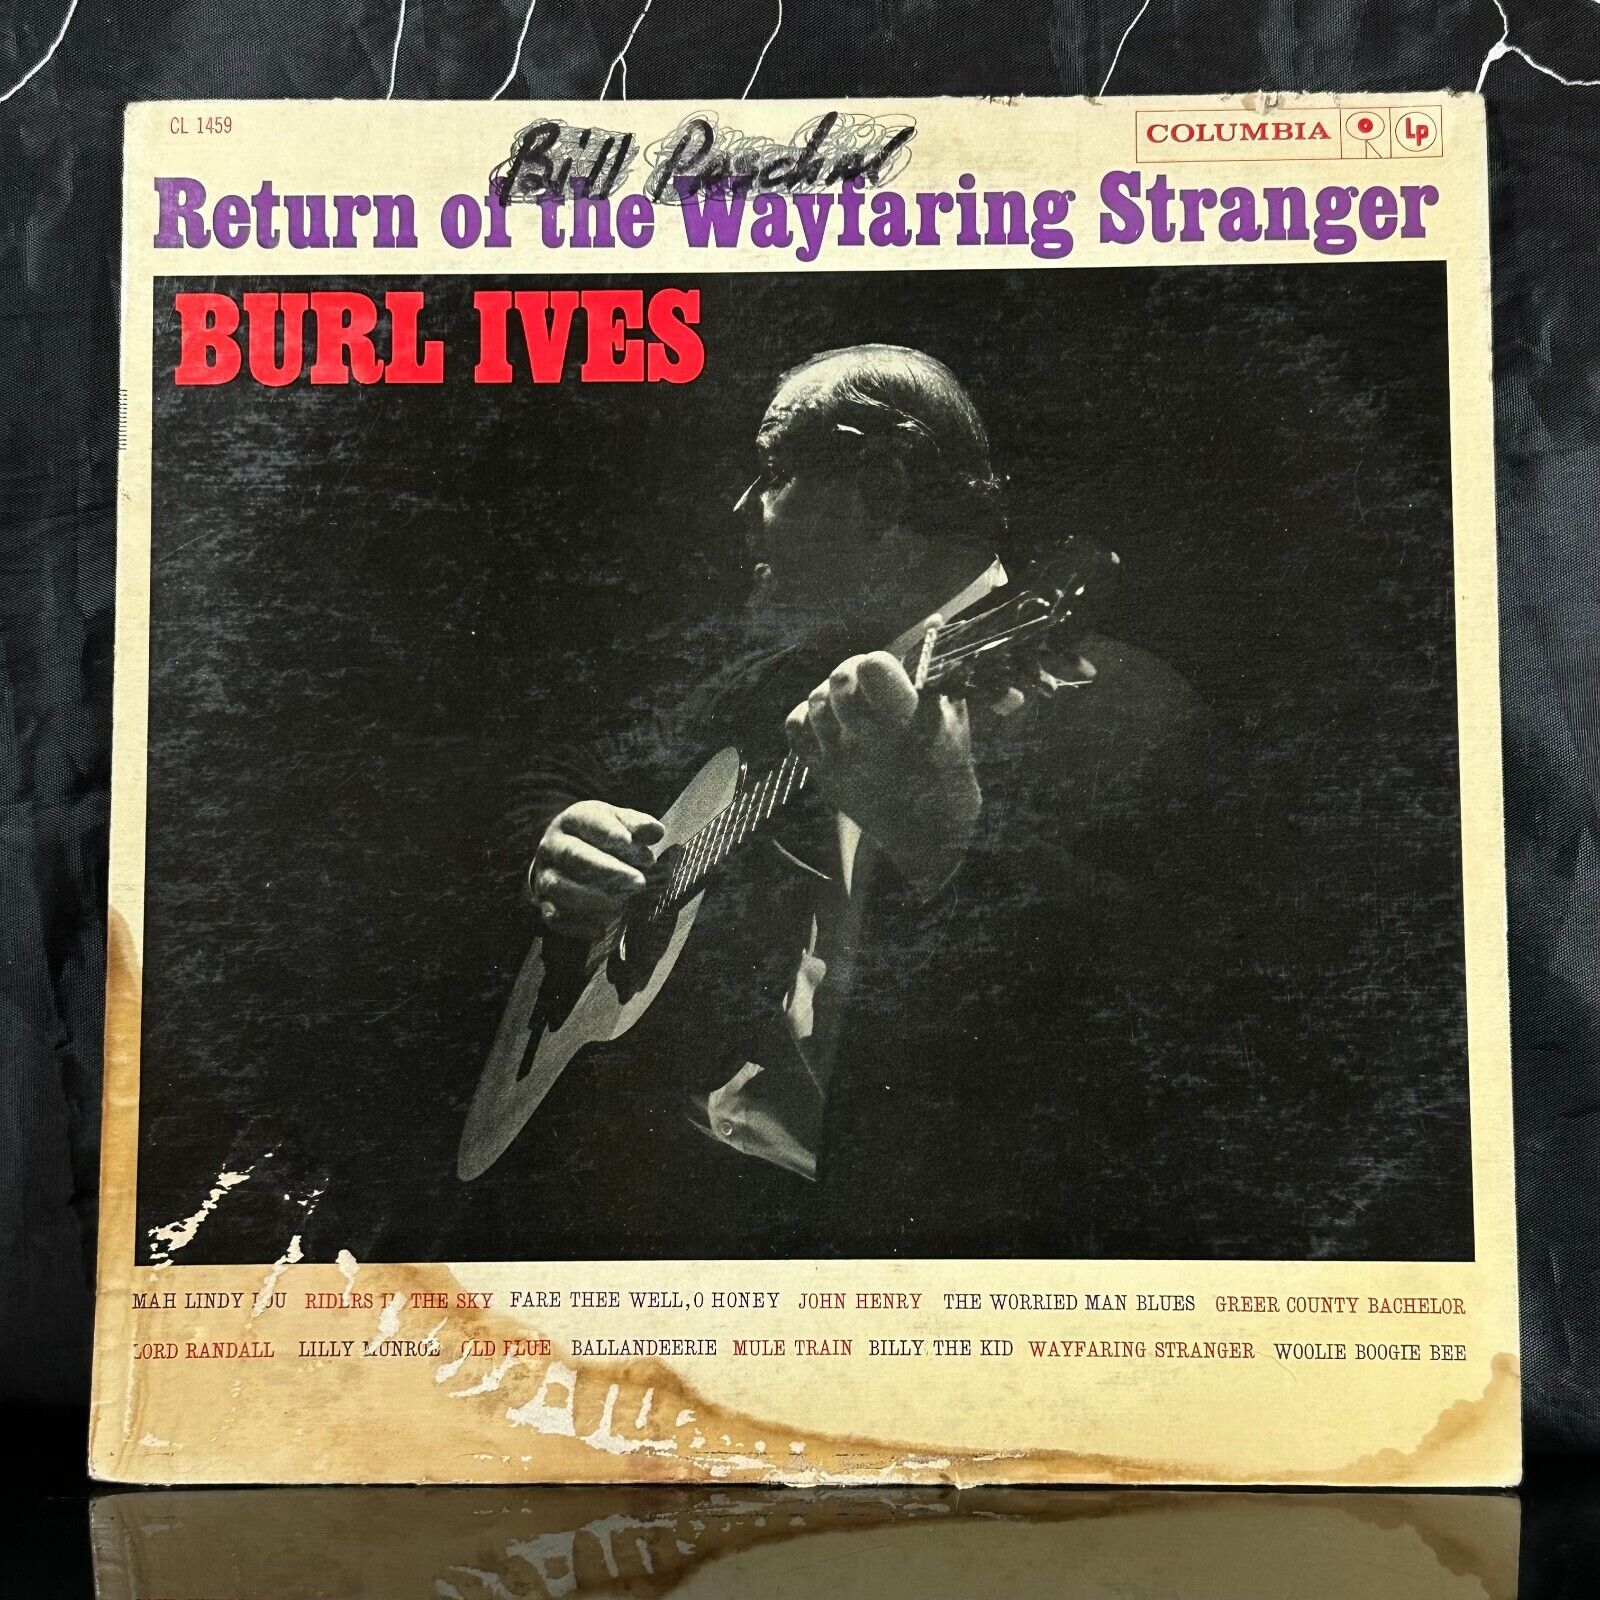 Burl Ives Mono LP 1960 Return of the Wayfaring Stranger - Columbia CL 1459